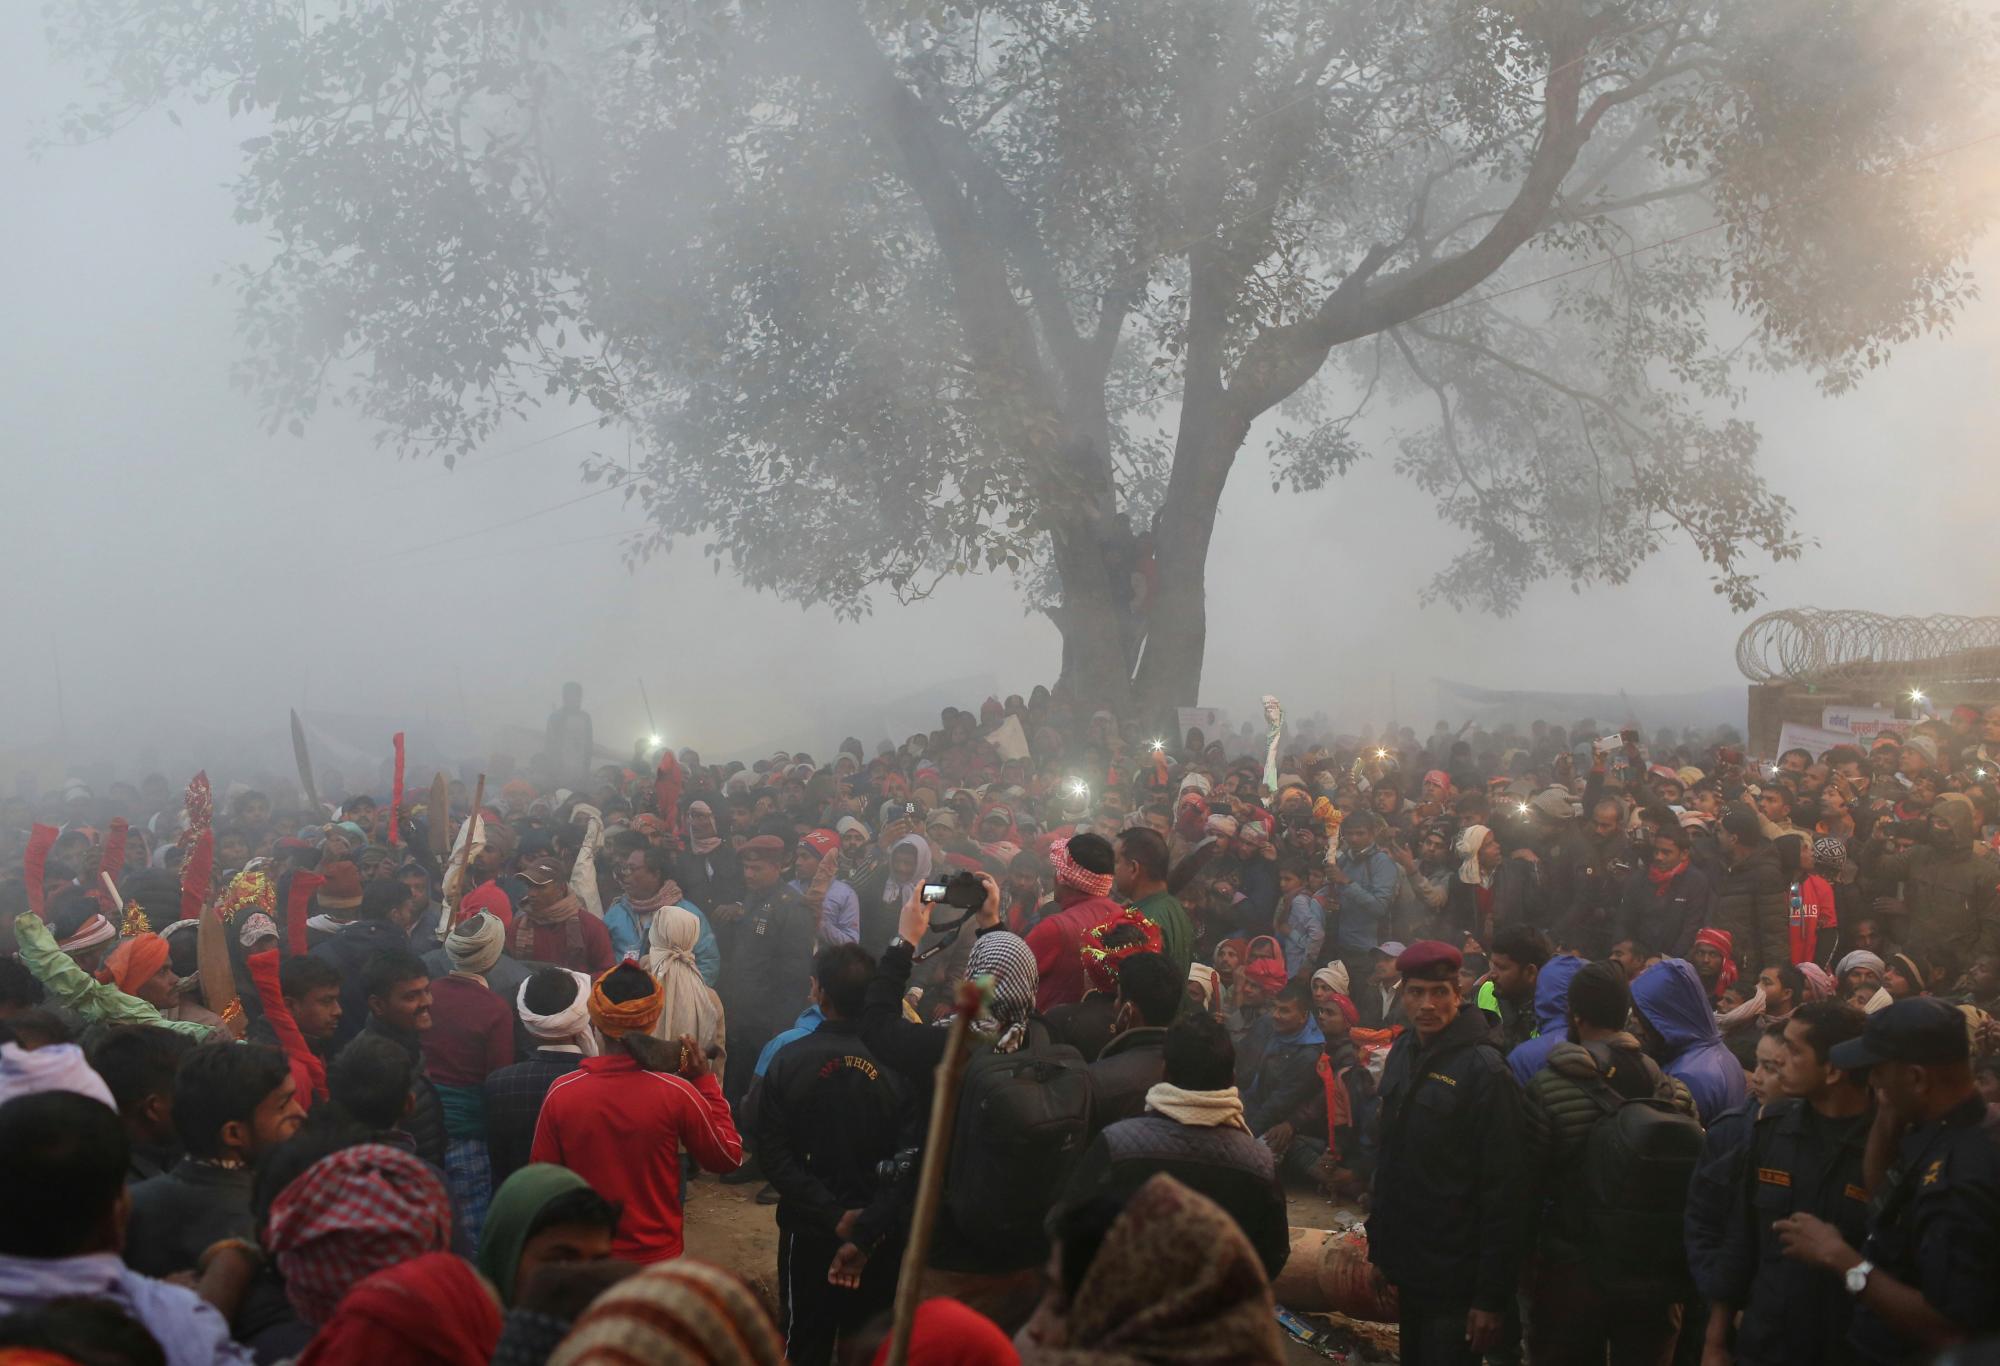 Los devotos hindúes se reúnen para observar el sacrificio de animales durante el festival de Gadhimai en Bariyarpur, en el distrito de Bara 80 millas (50 millas) al sur de Katmandú, Nepal, el martes 3 de diciembre de 2019. Cientos de miles de hindúes se han reunido en un templo aquí para una ceremonia que involucra La matanza de miles de animales. 